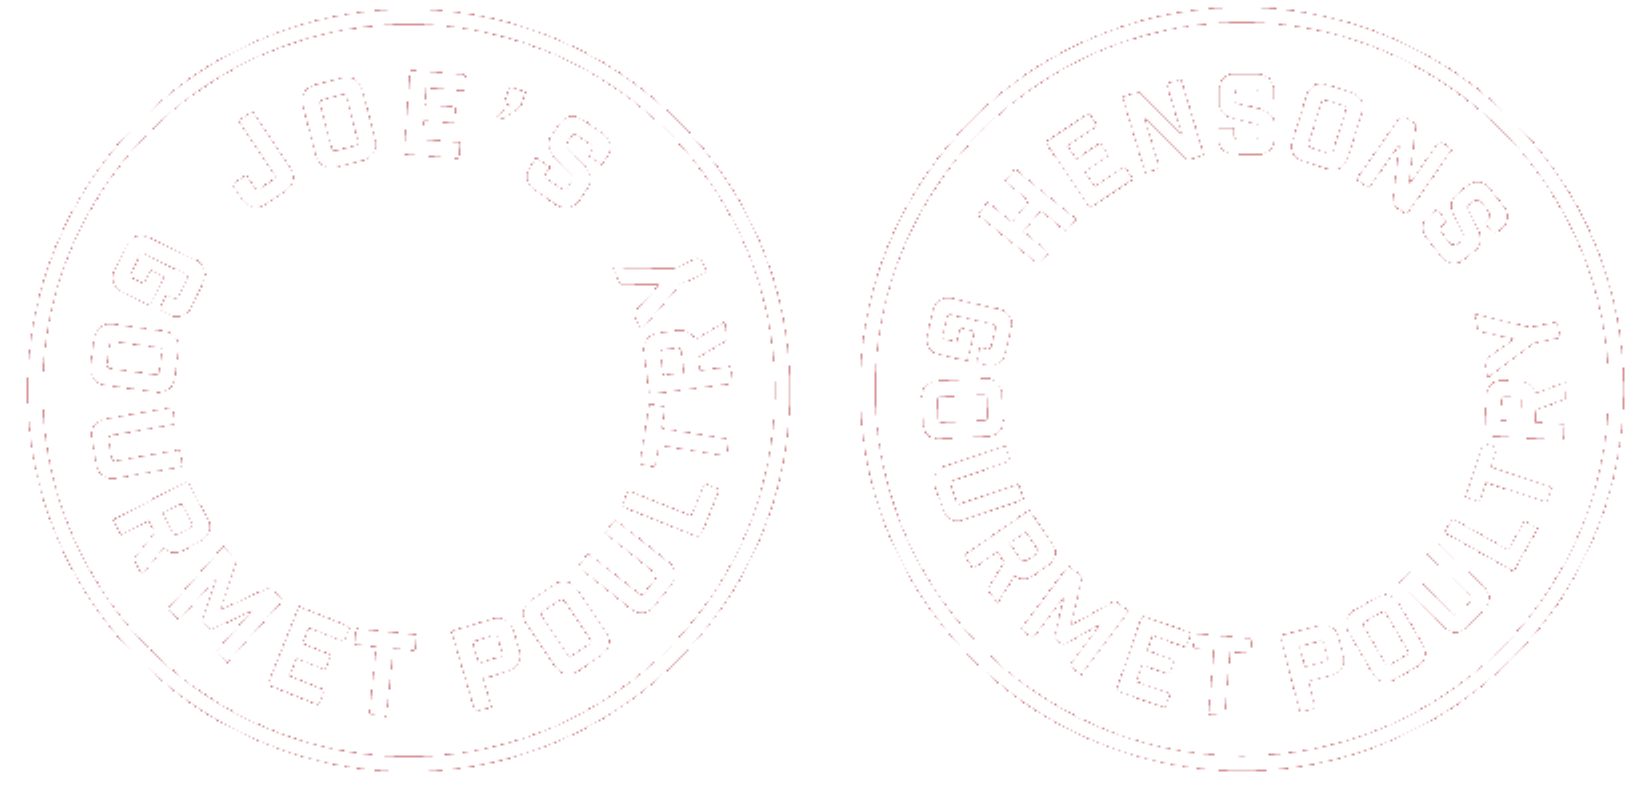 Joe's Gourmet Poultry